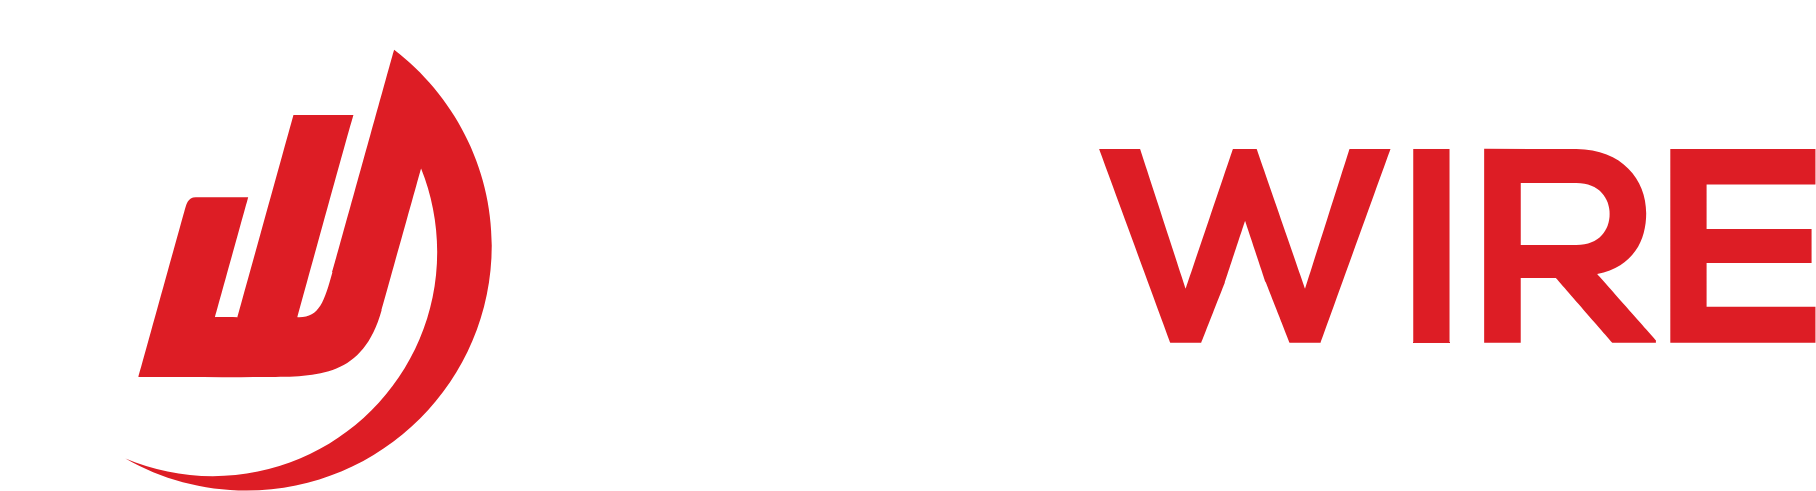 Redwire Logo groß für dunkle Hintergründe (transparentes PNG)